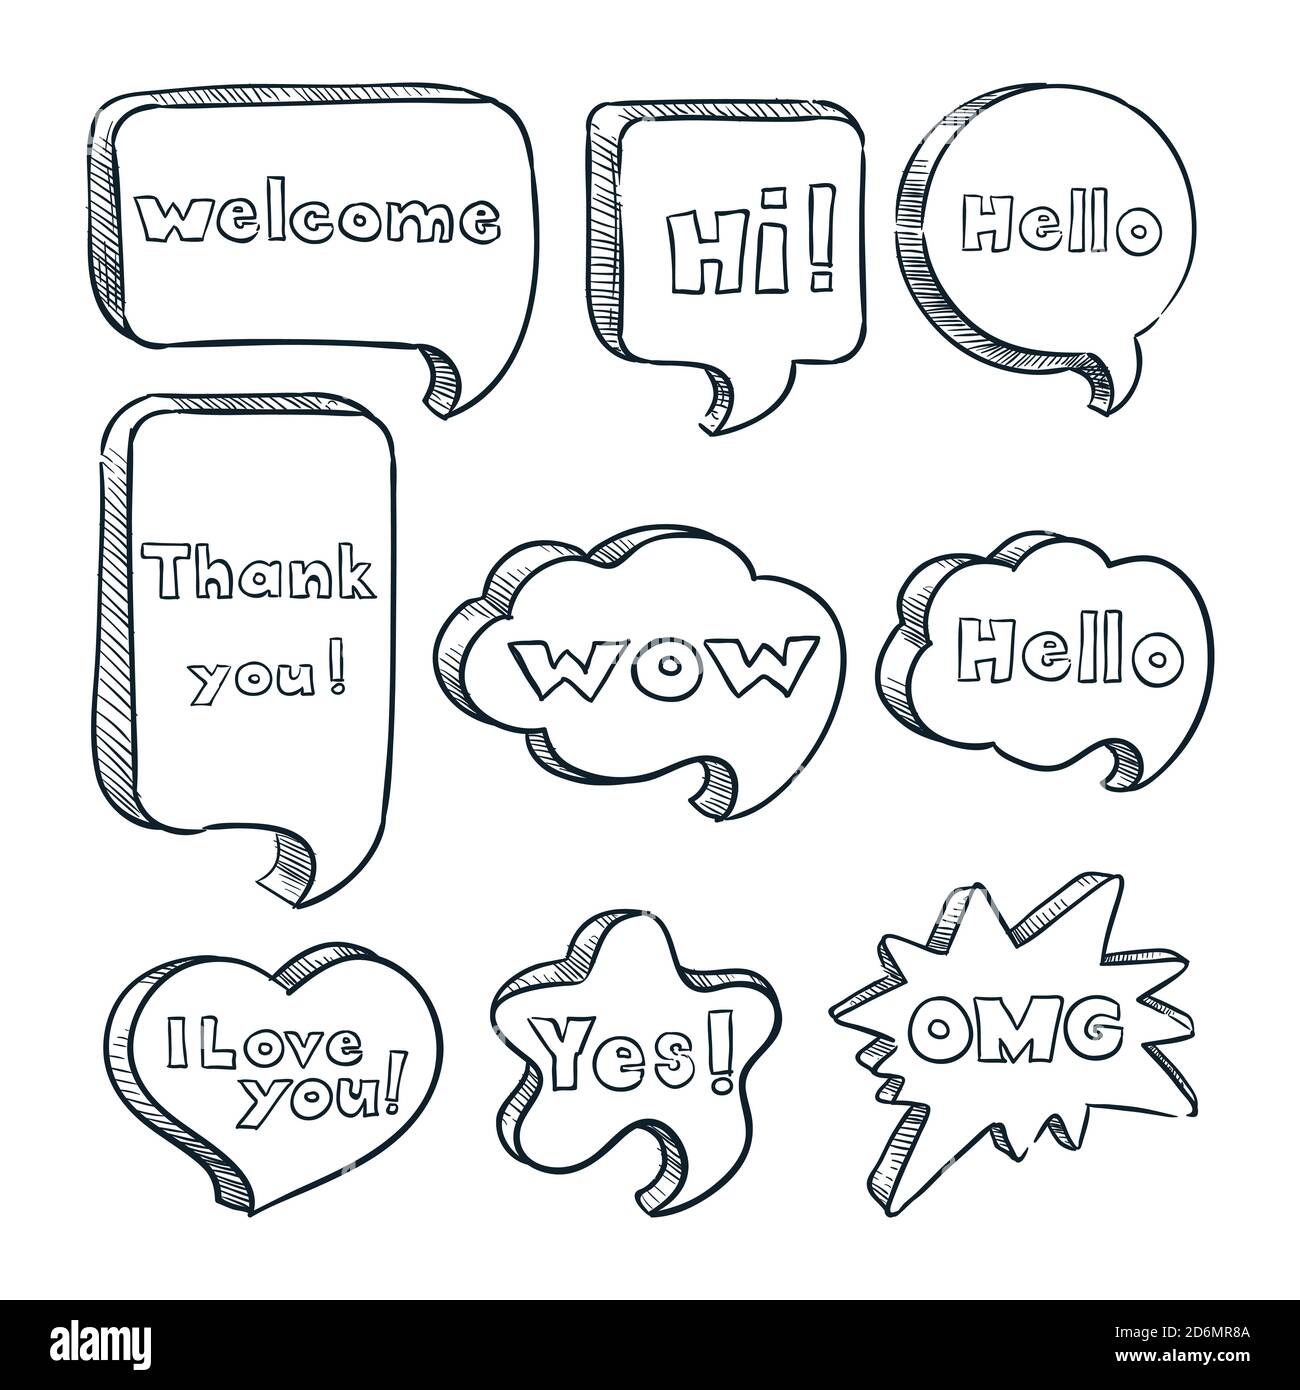 Sprechblasen mit Wörtern und Phrasen, Vektorskizze Illustration. Handgezeichnete Comic-Text Wolken mit Nachrichten. Dialogsymbole, Sticker und Design eleme Stock Vektor